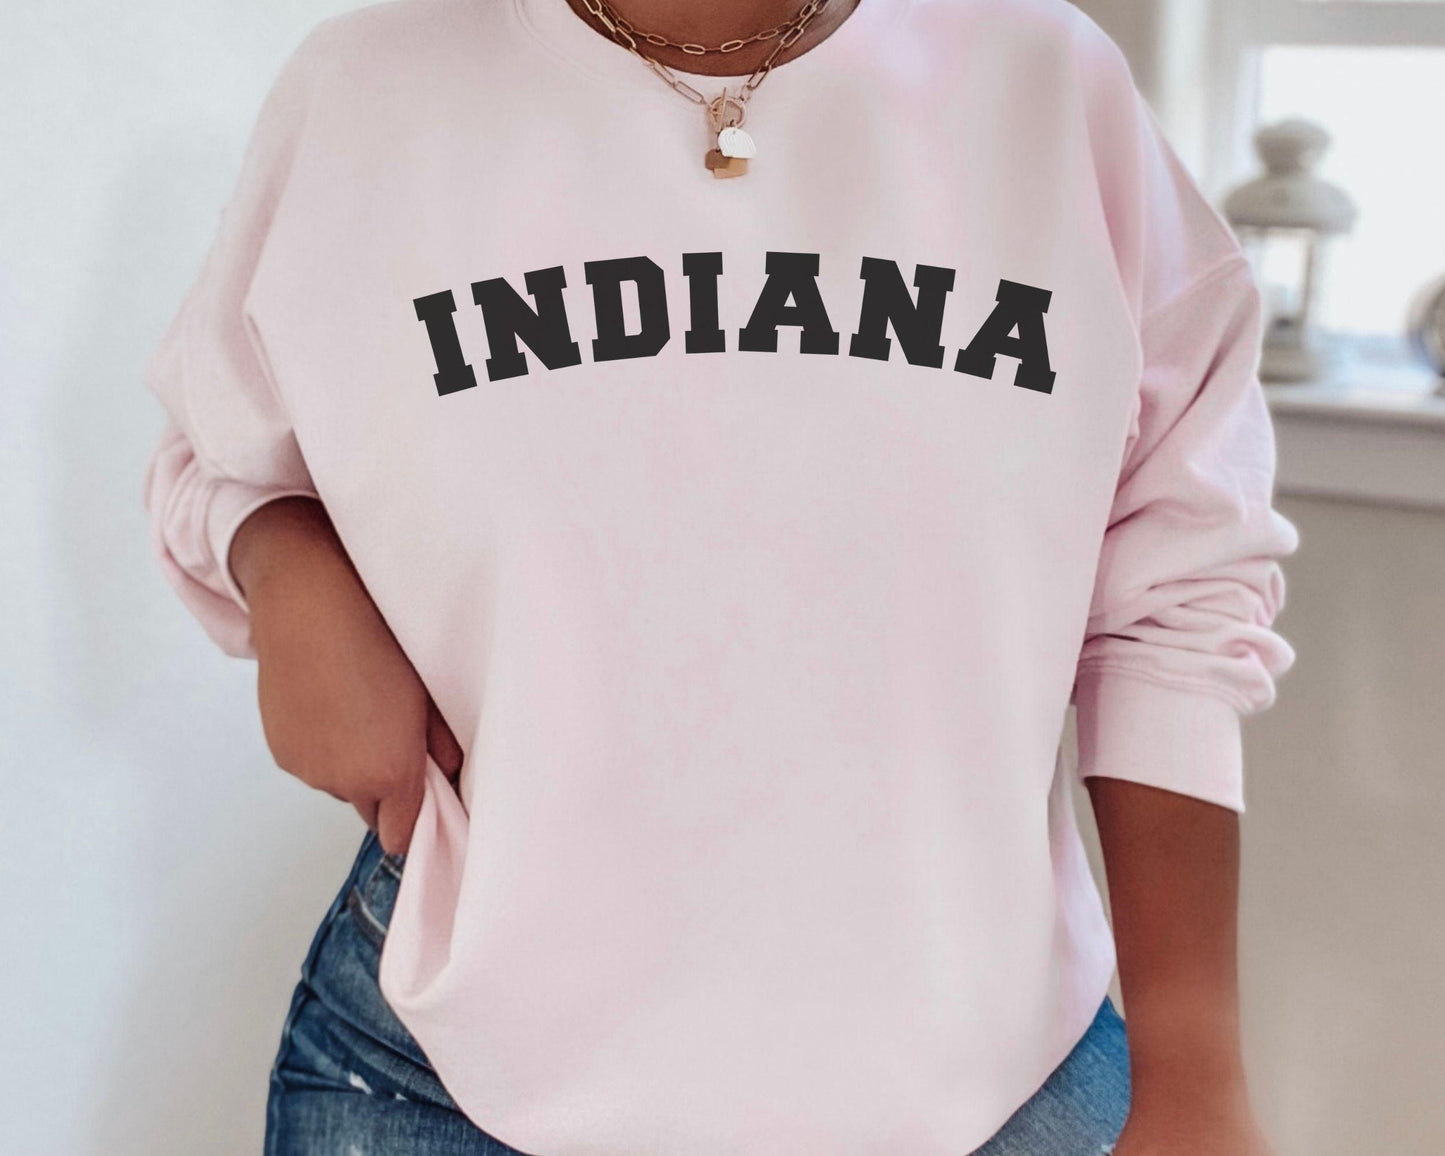 Indiana Home State Sweatshirt - BentleyBlueCo